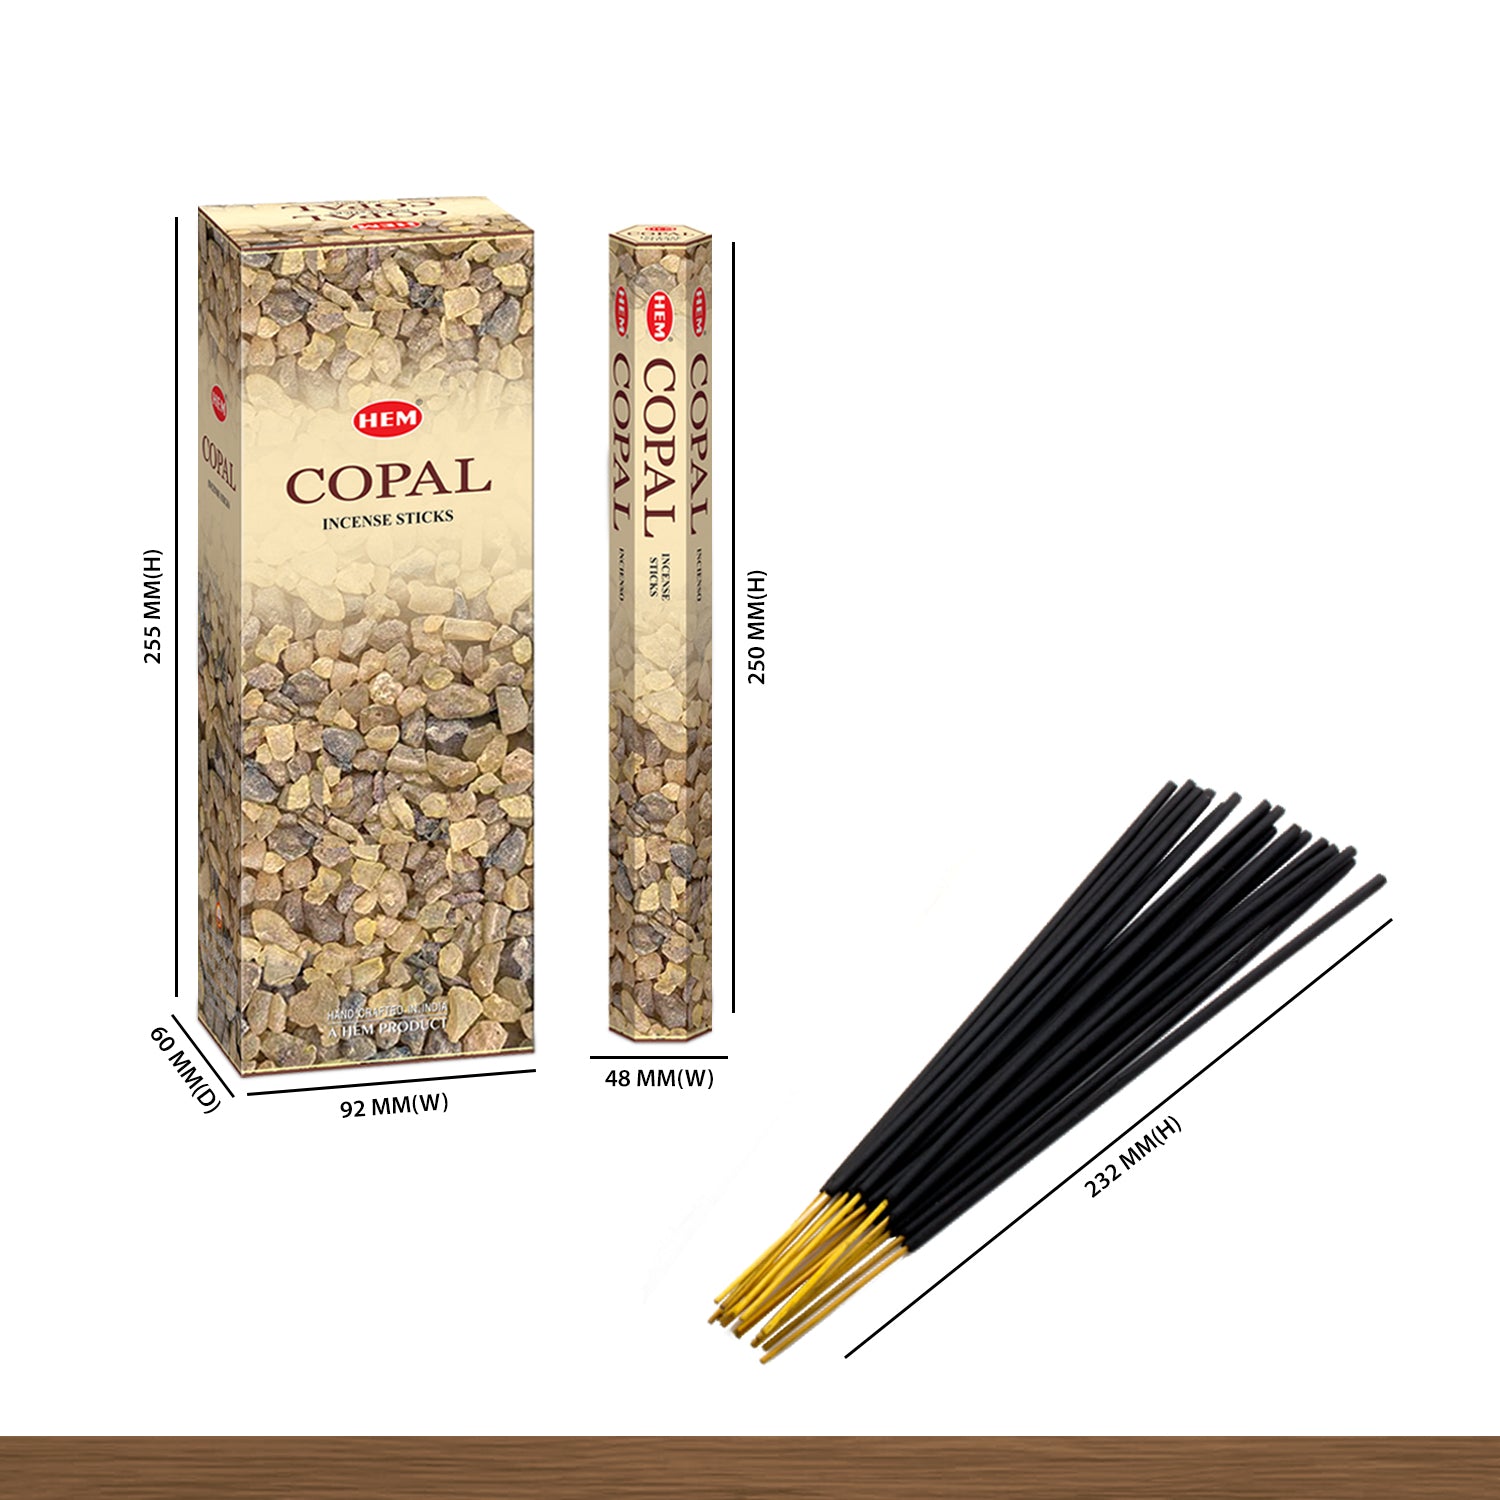 copal-incense-sticks-size